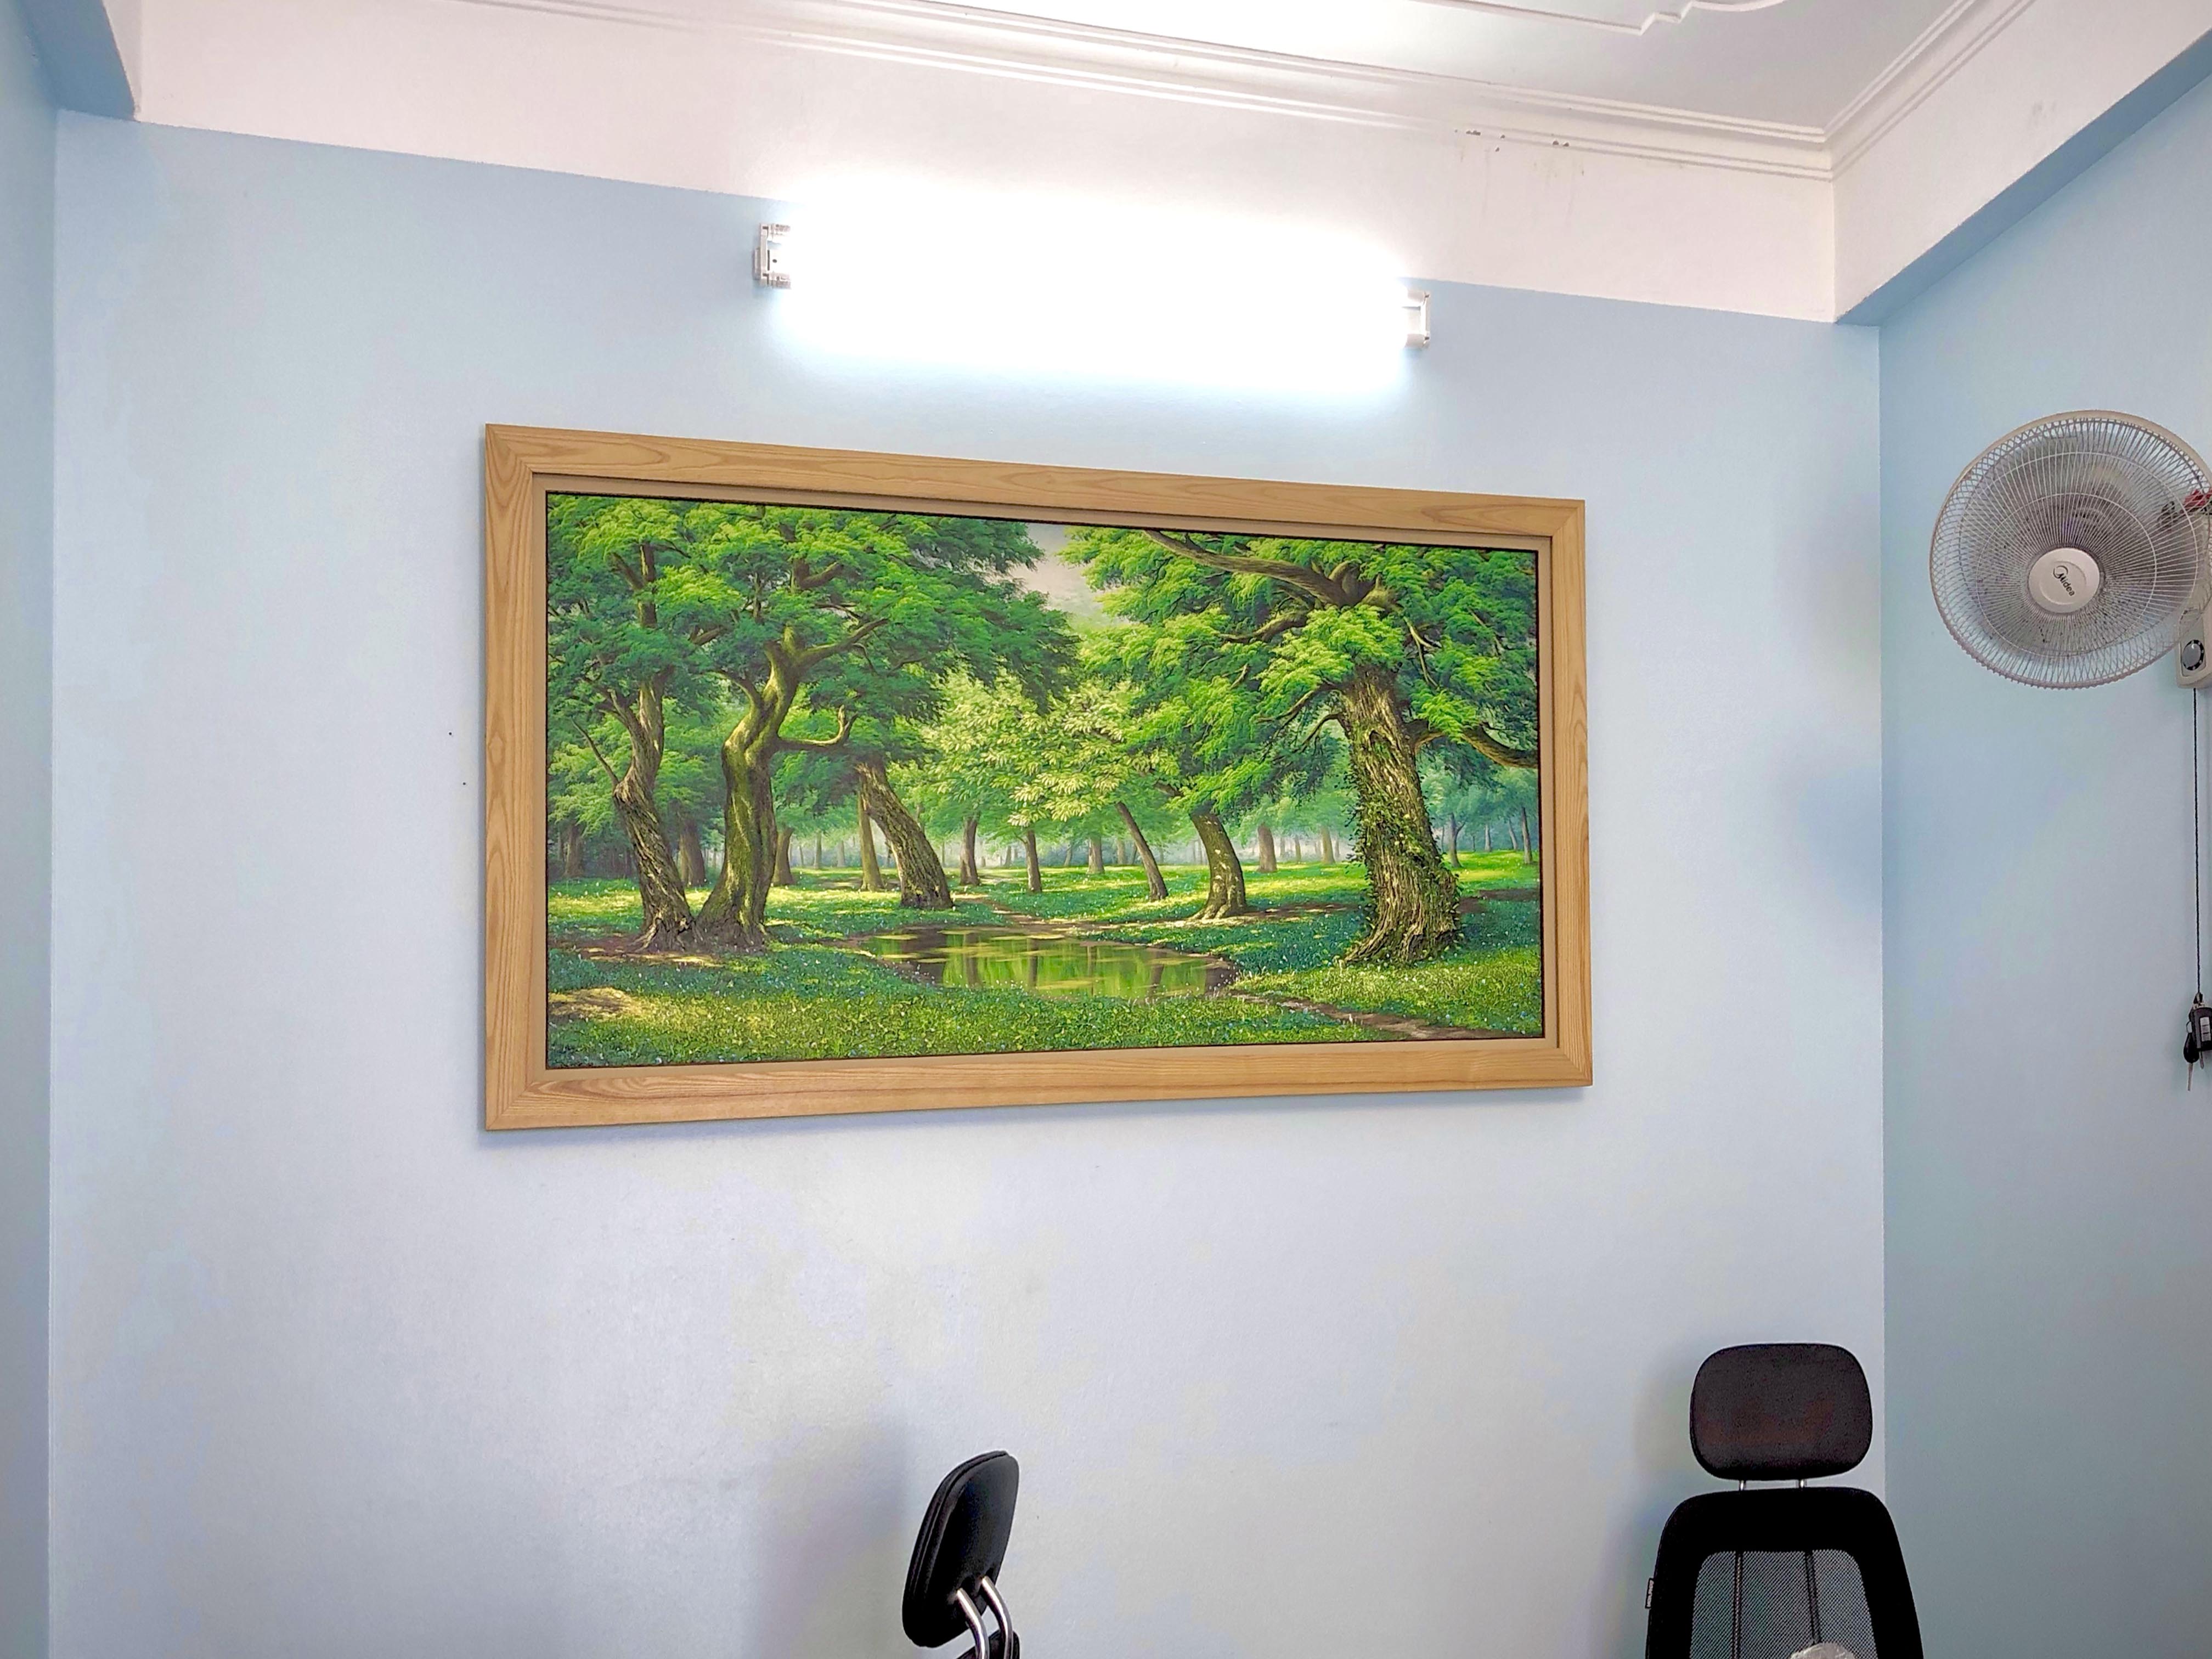 Lắp đặt bức tranh sơn dầu phong cảnh nước ngoài cho khách hàng tại Trung Kính, Hà Nội 1